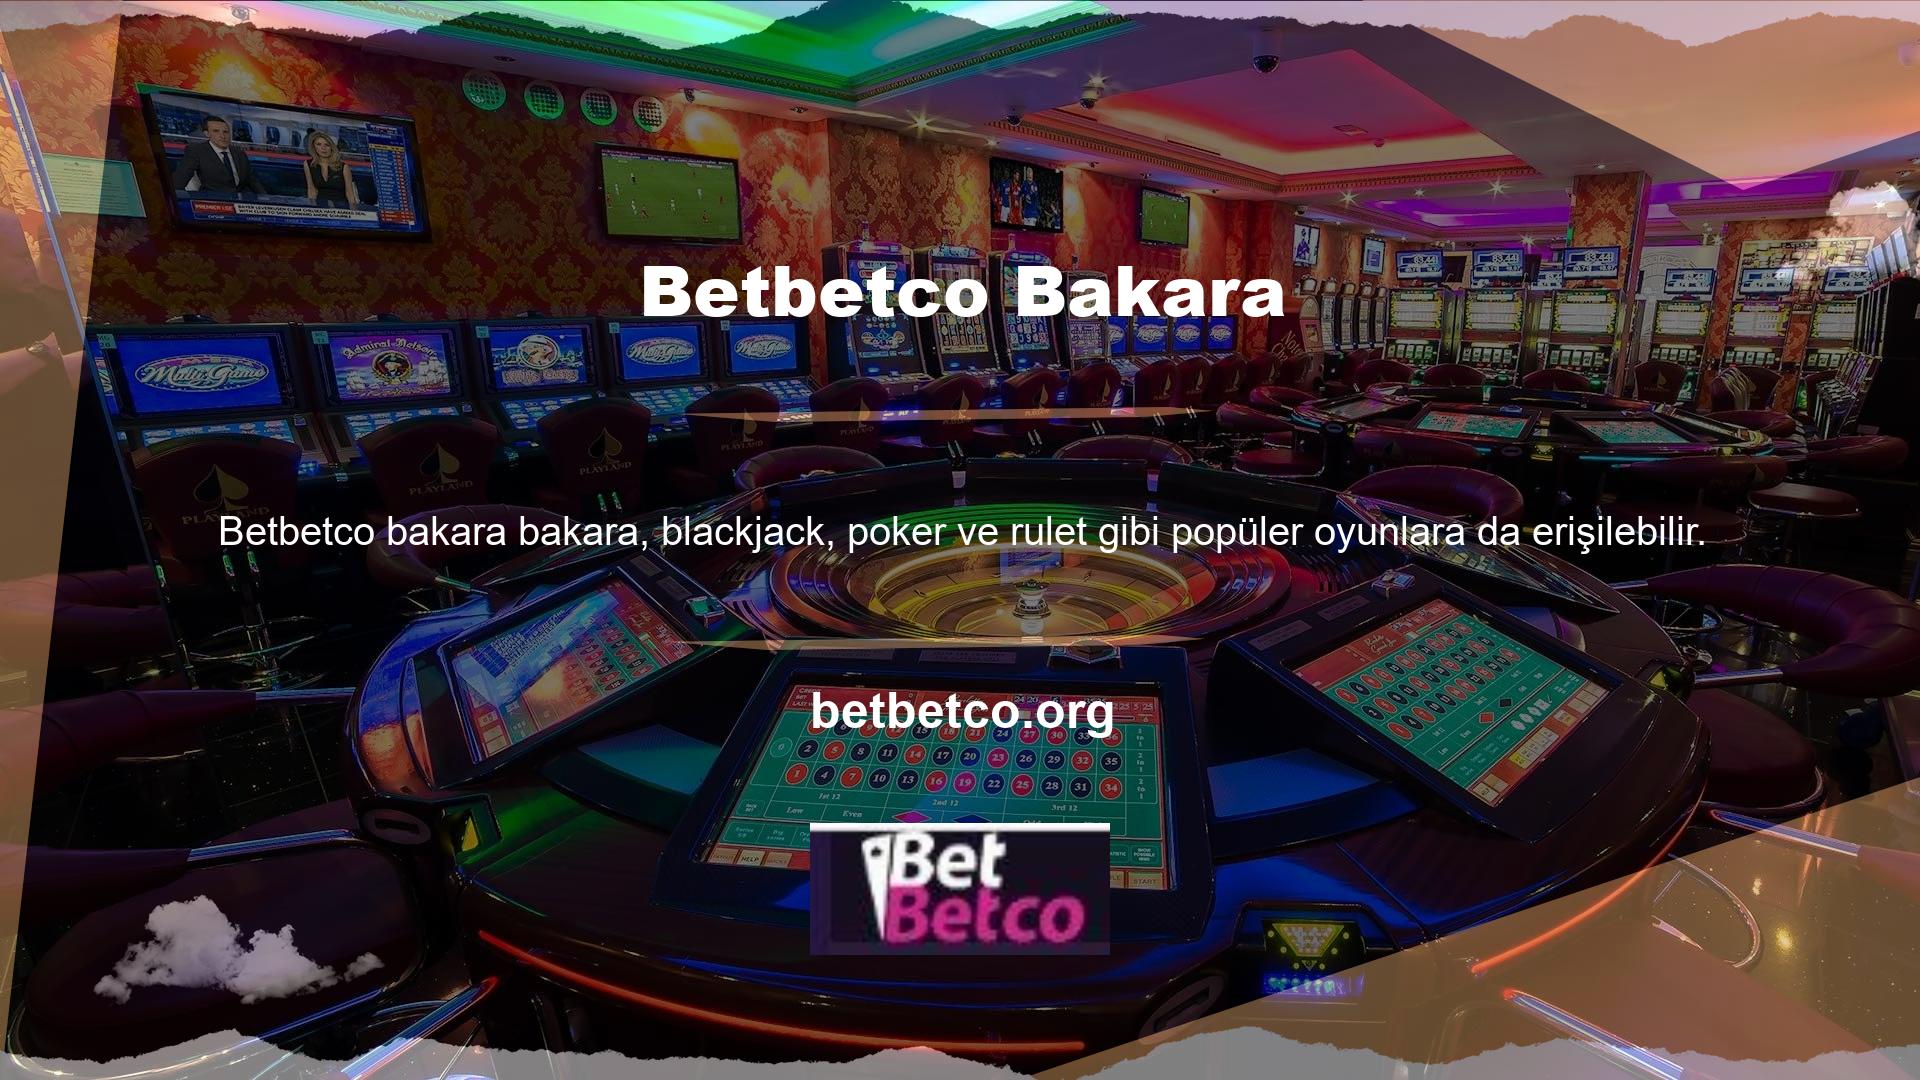 Geleneksel casino oyunlarının yanı sıra slot makineleri de mevcuttur